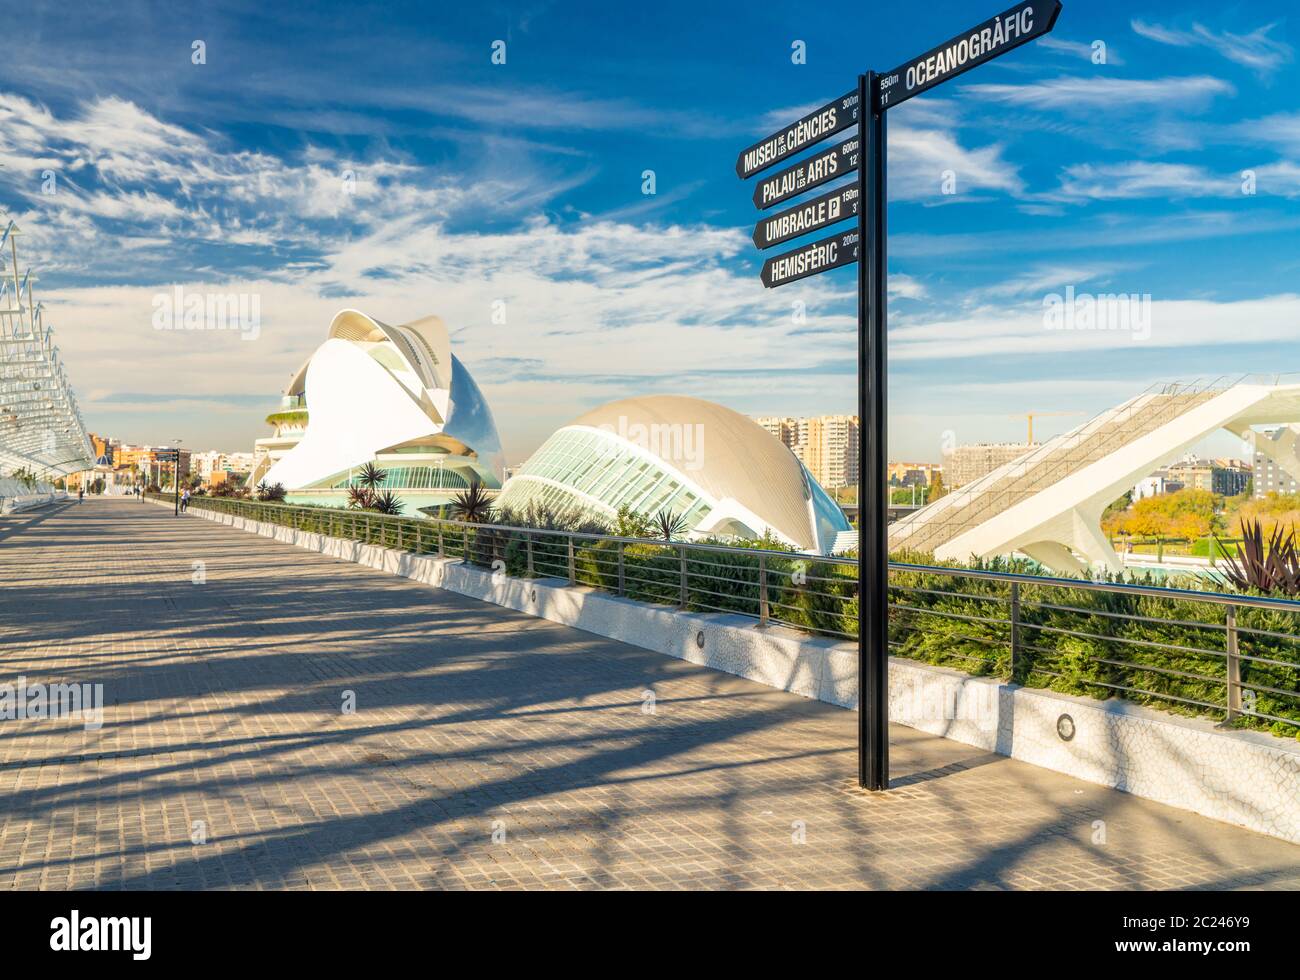 Ville des Arts et des Sciences, musée océanographique et de l'hémisphère, célèbre lieu d'Espagne, d'Europe, de Valence Banque D'Images